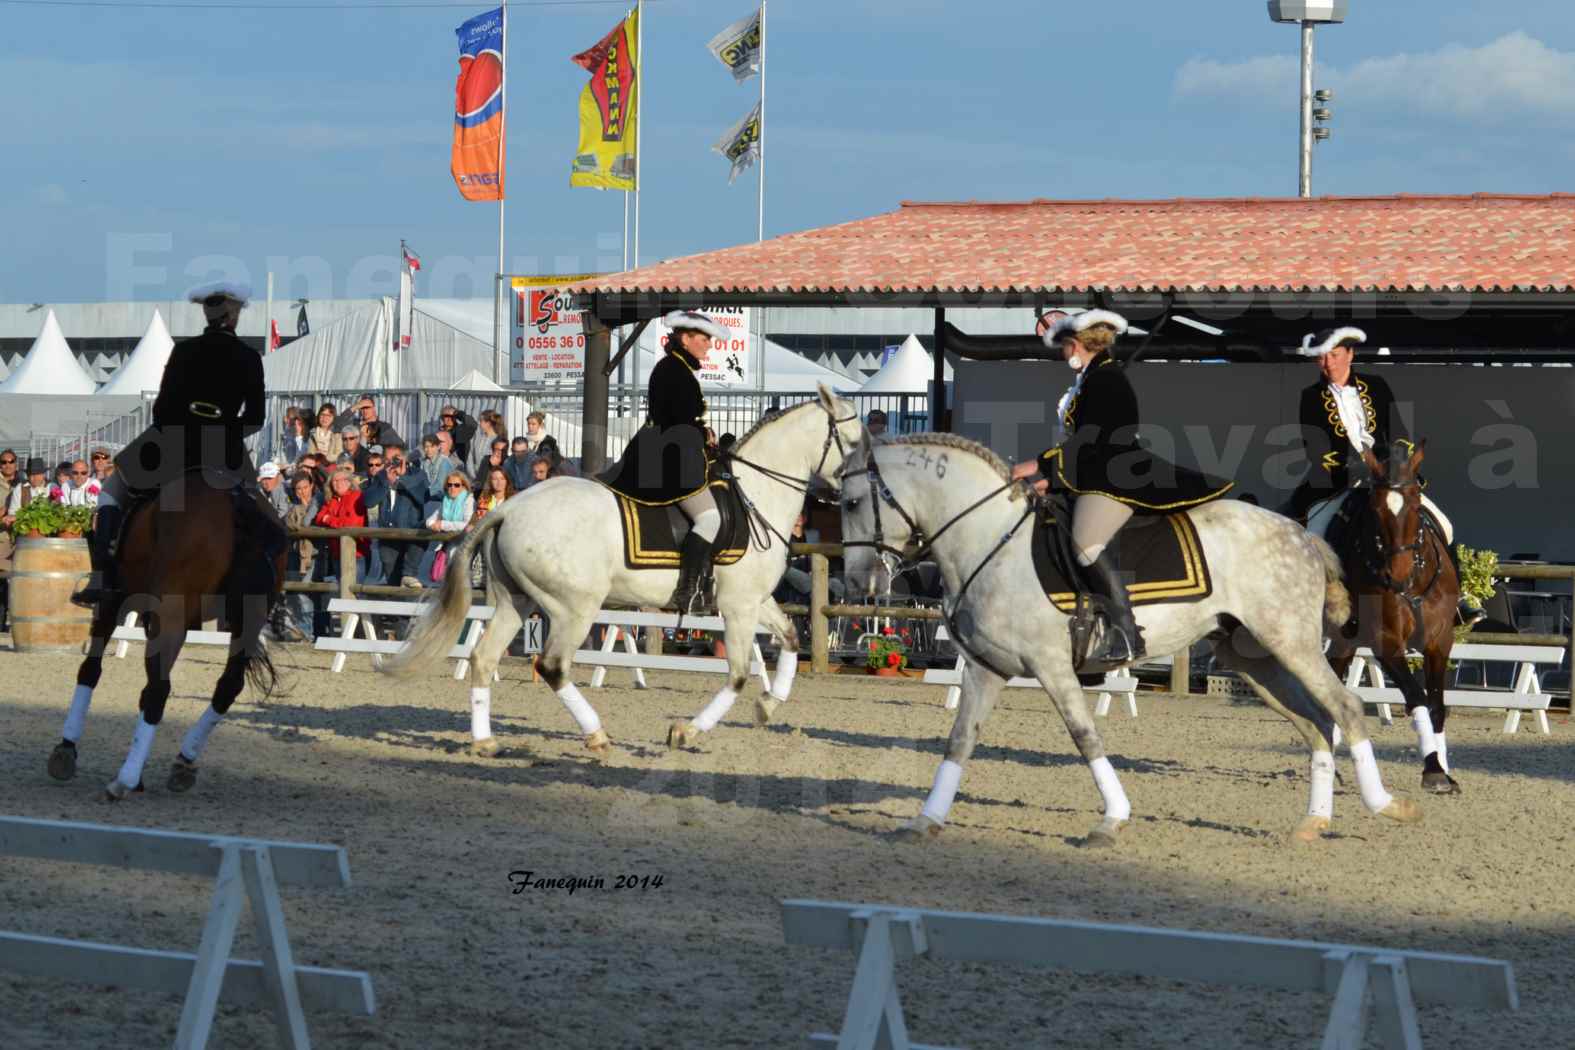 Carrousel de cavalières Equitation de travail lors du salon "Equitaine" à Bordeaux en 2014 - 51